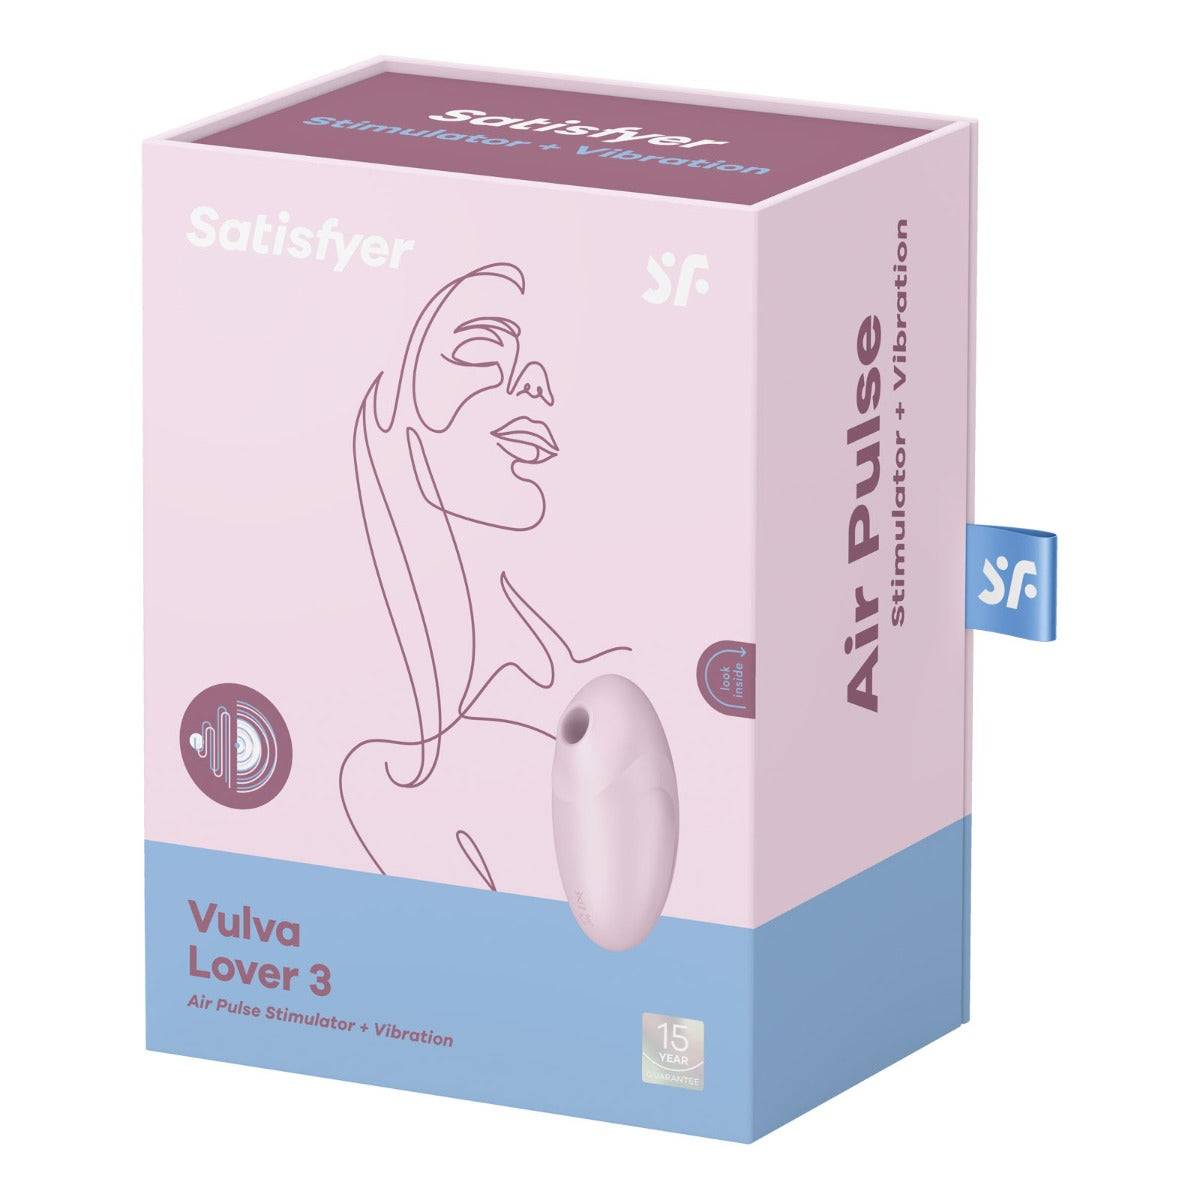 Satisfyer Vulva Lover 3 Air Pulse Stimulator Pink